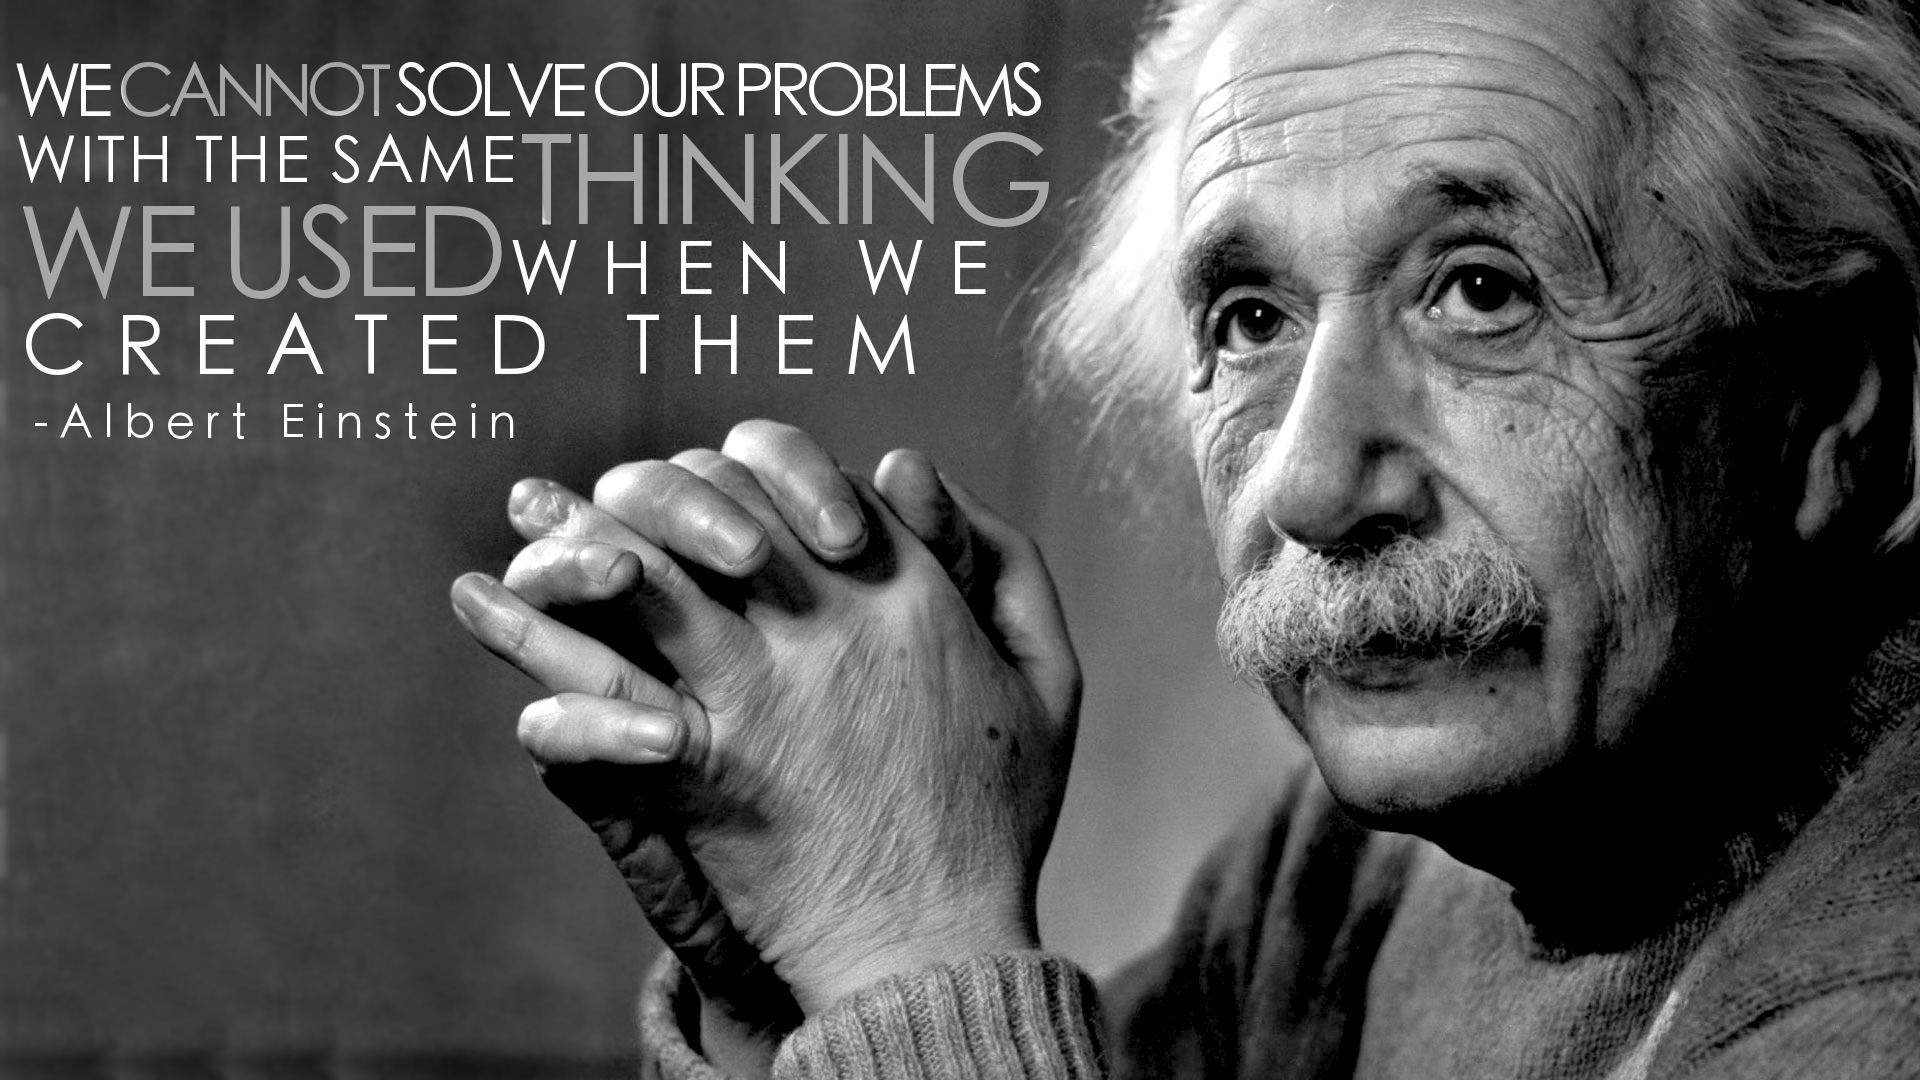 Albert Einstein Funny Quotes Quotesgram